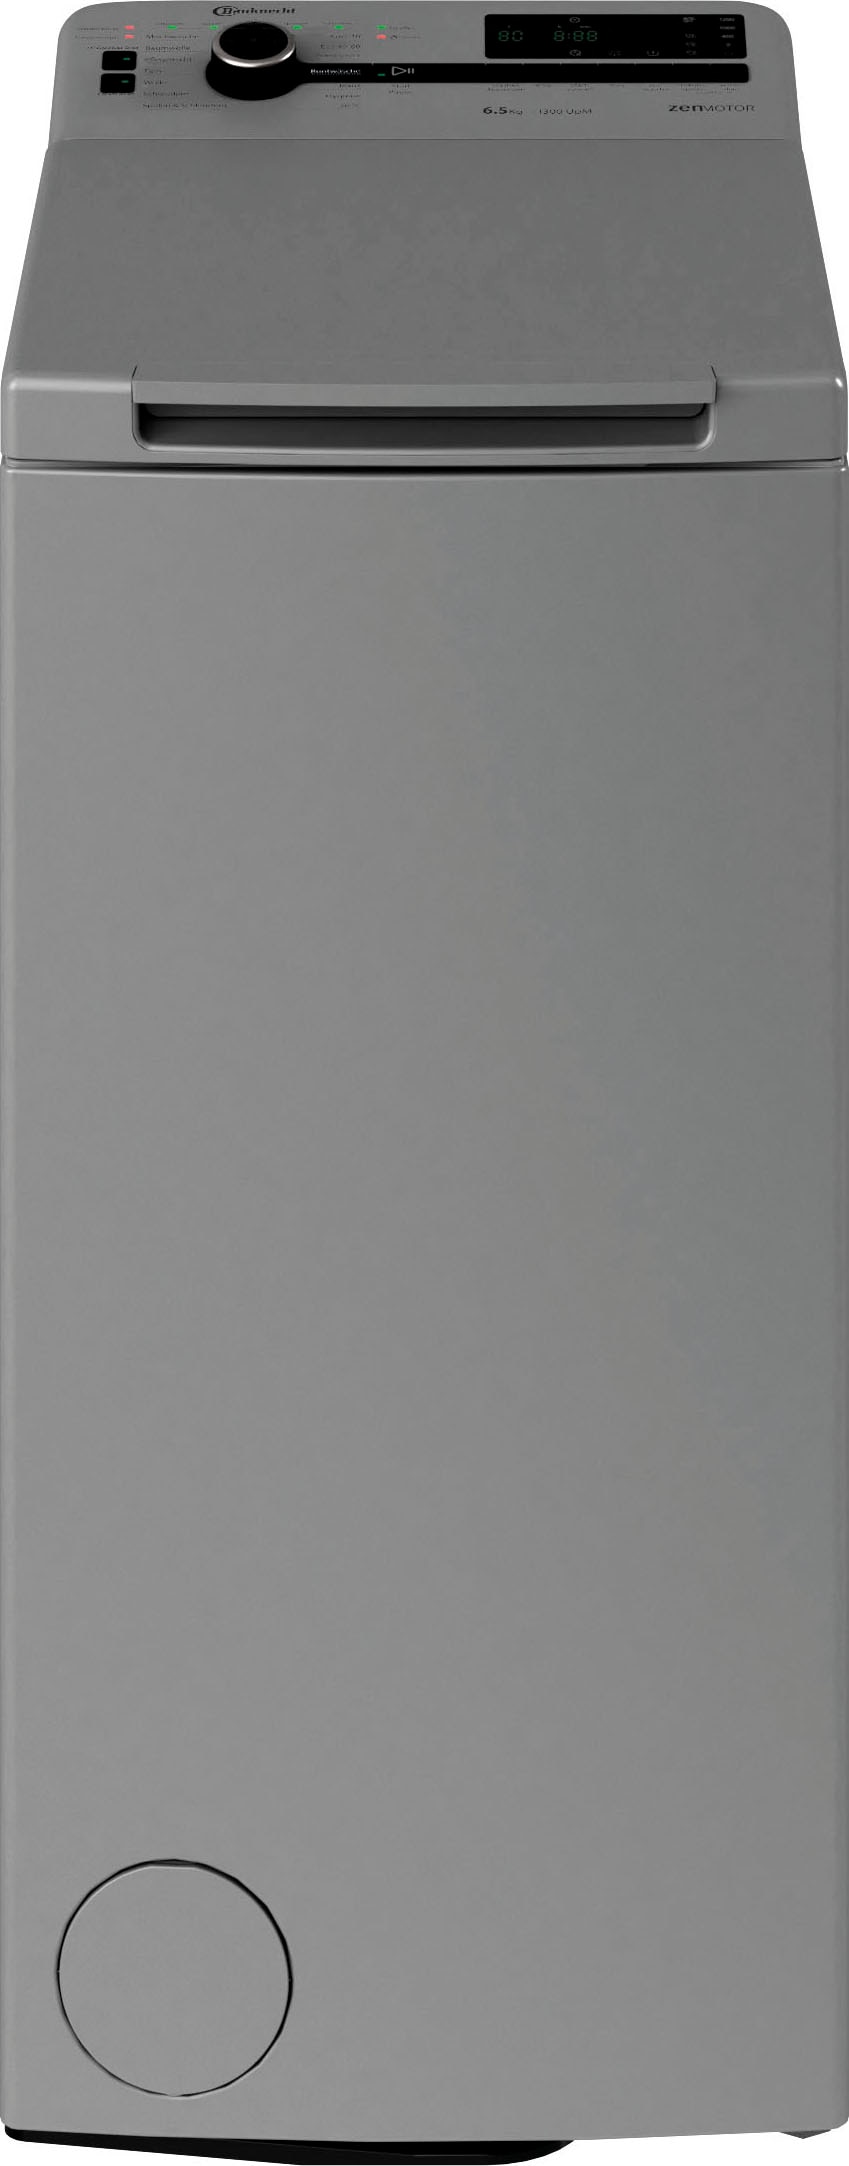 BAUKNECHT Waschmaschine Toplader »WMT 6513 D4«, WMT 6513 D4, 6,5 kg, 1300 U/min